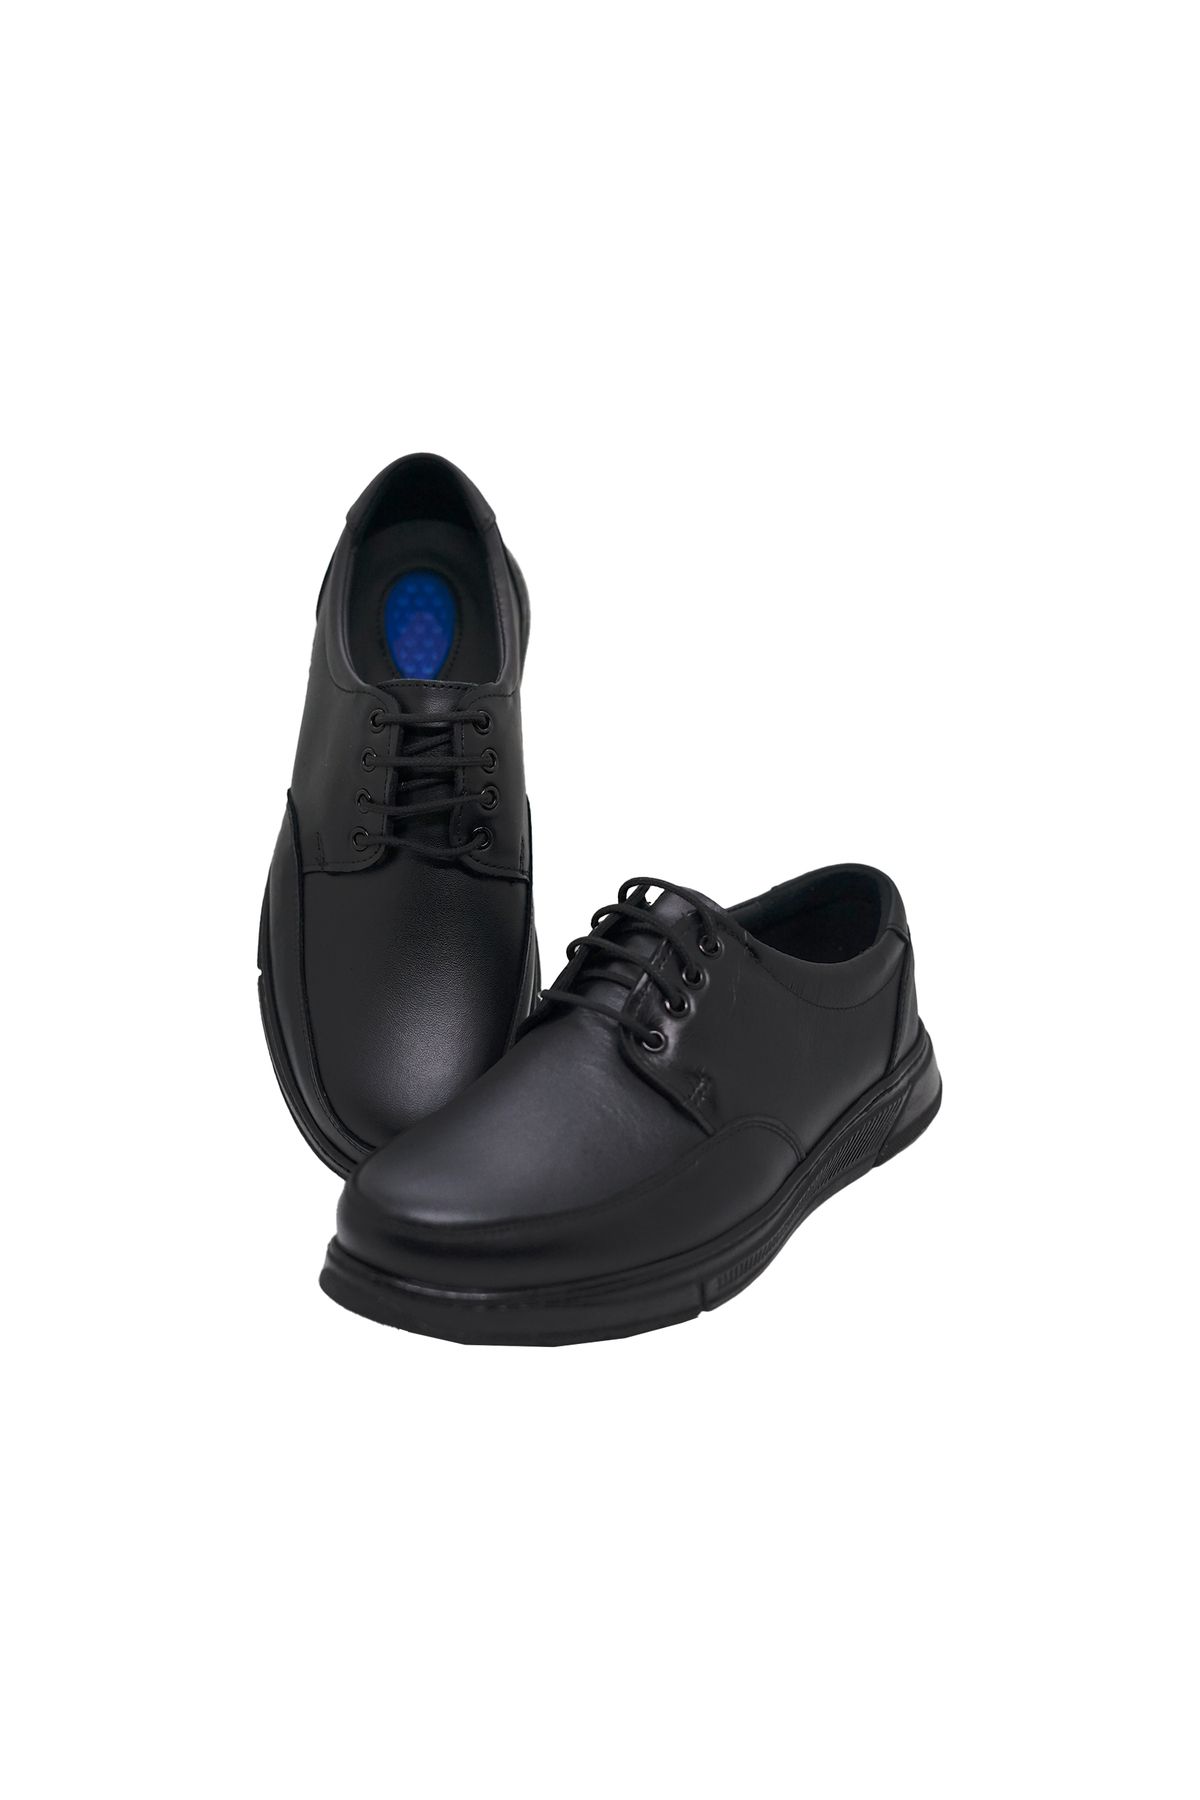 Black Vein Erkek Hakiki Deri Ultra Rahat Jelli Bağcıklı Siyah Günlük Baba Ayakkabısı Bva-3